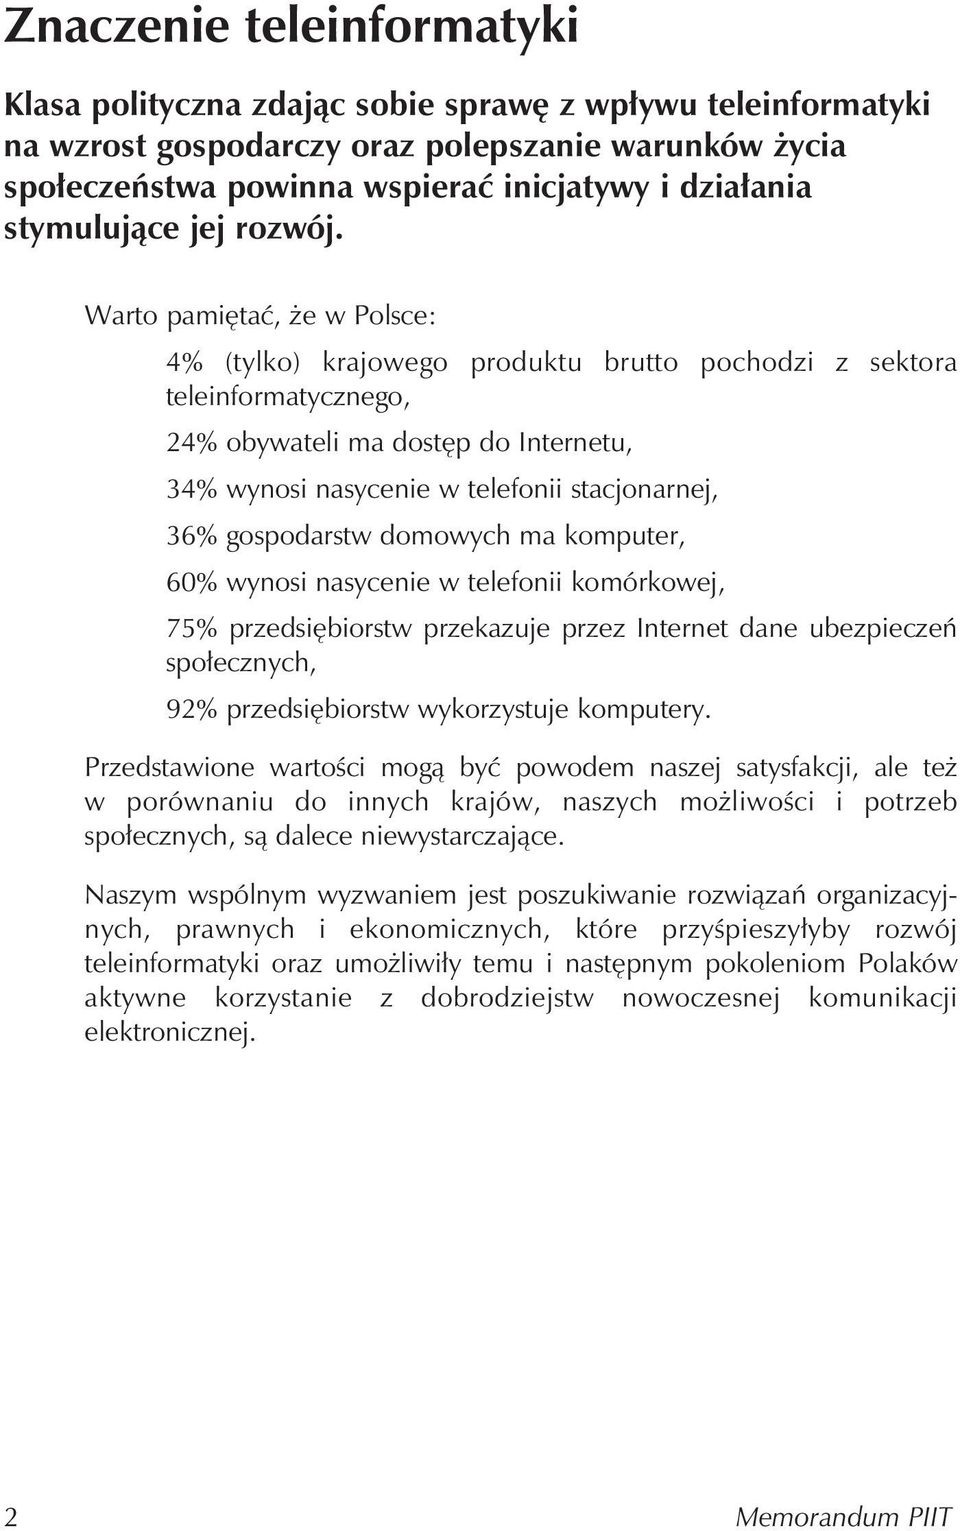 Warto pamiętać, że w Polsce: 4% (tylko) krajowego produktu brutto pochodzi z sektora teleinformatycznego, 24% obywateli ma dostęp do Internetu, 34% wynosi nasycenie w telefonii stacjonarnej, 36%